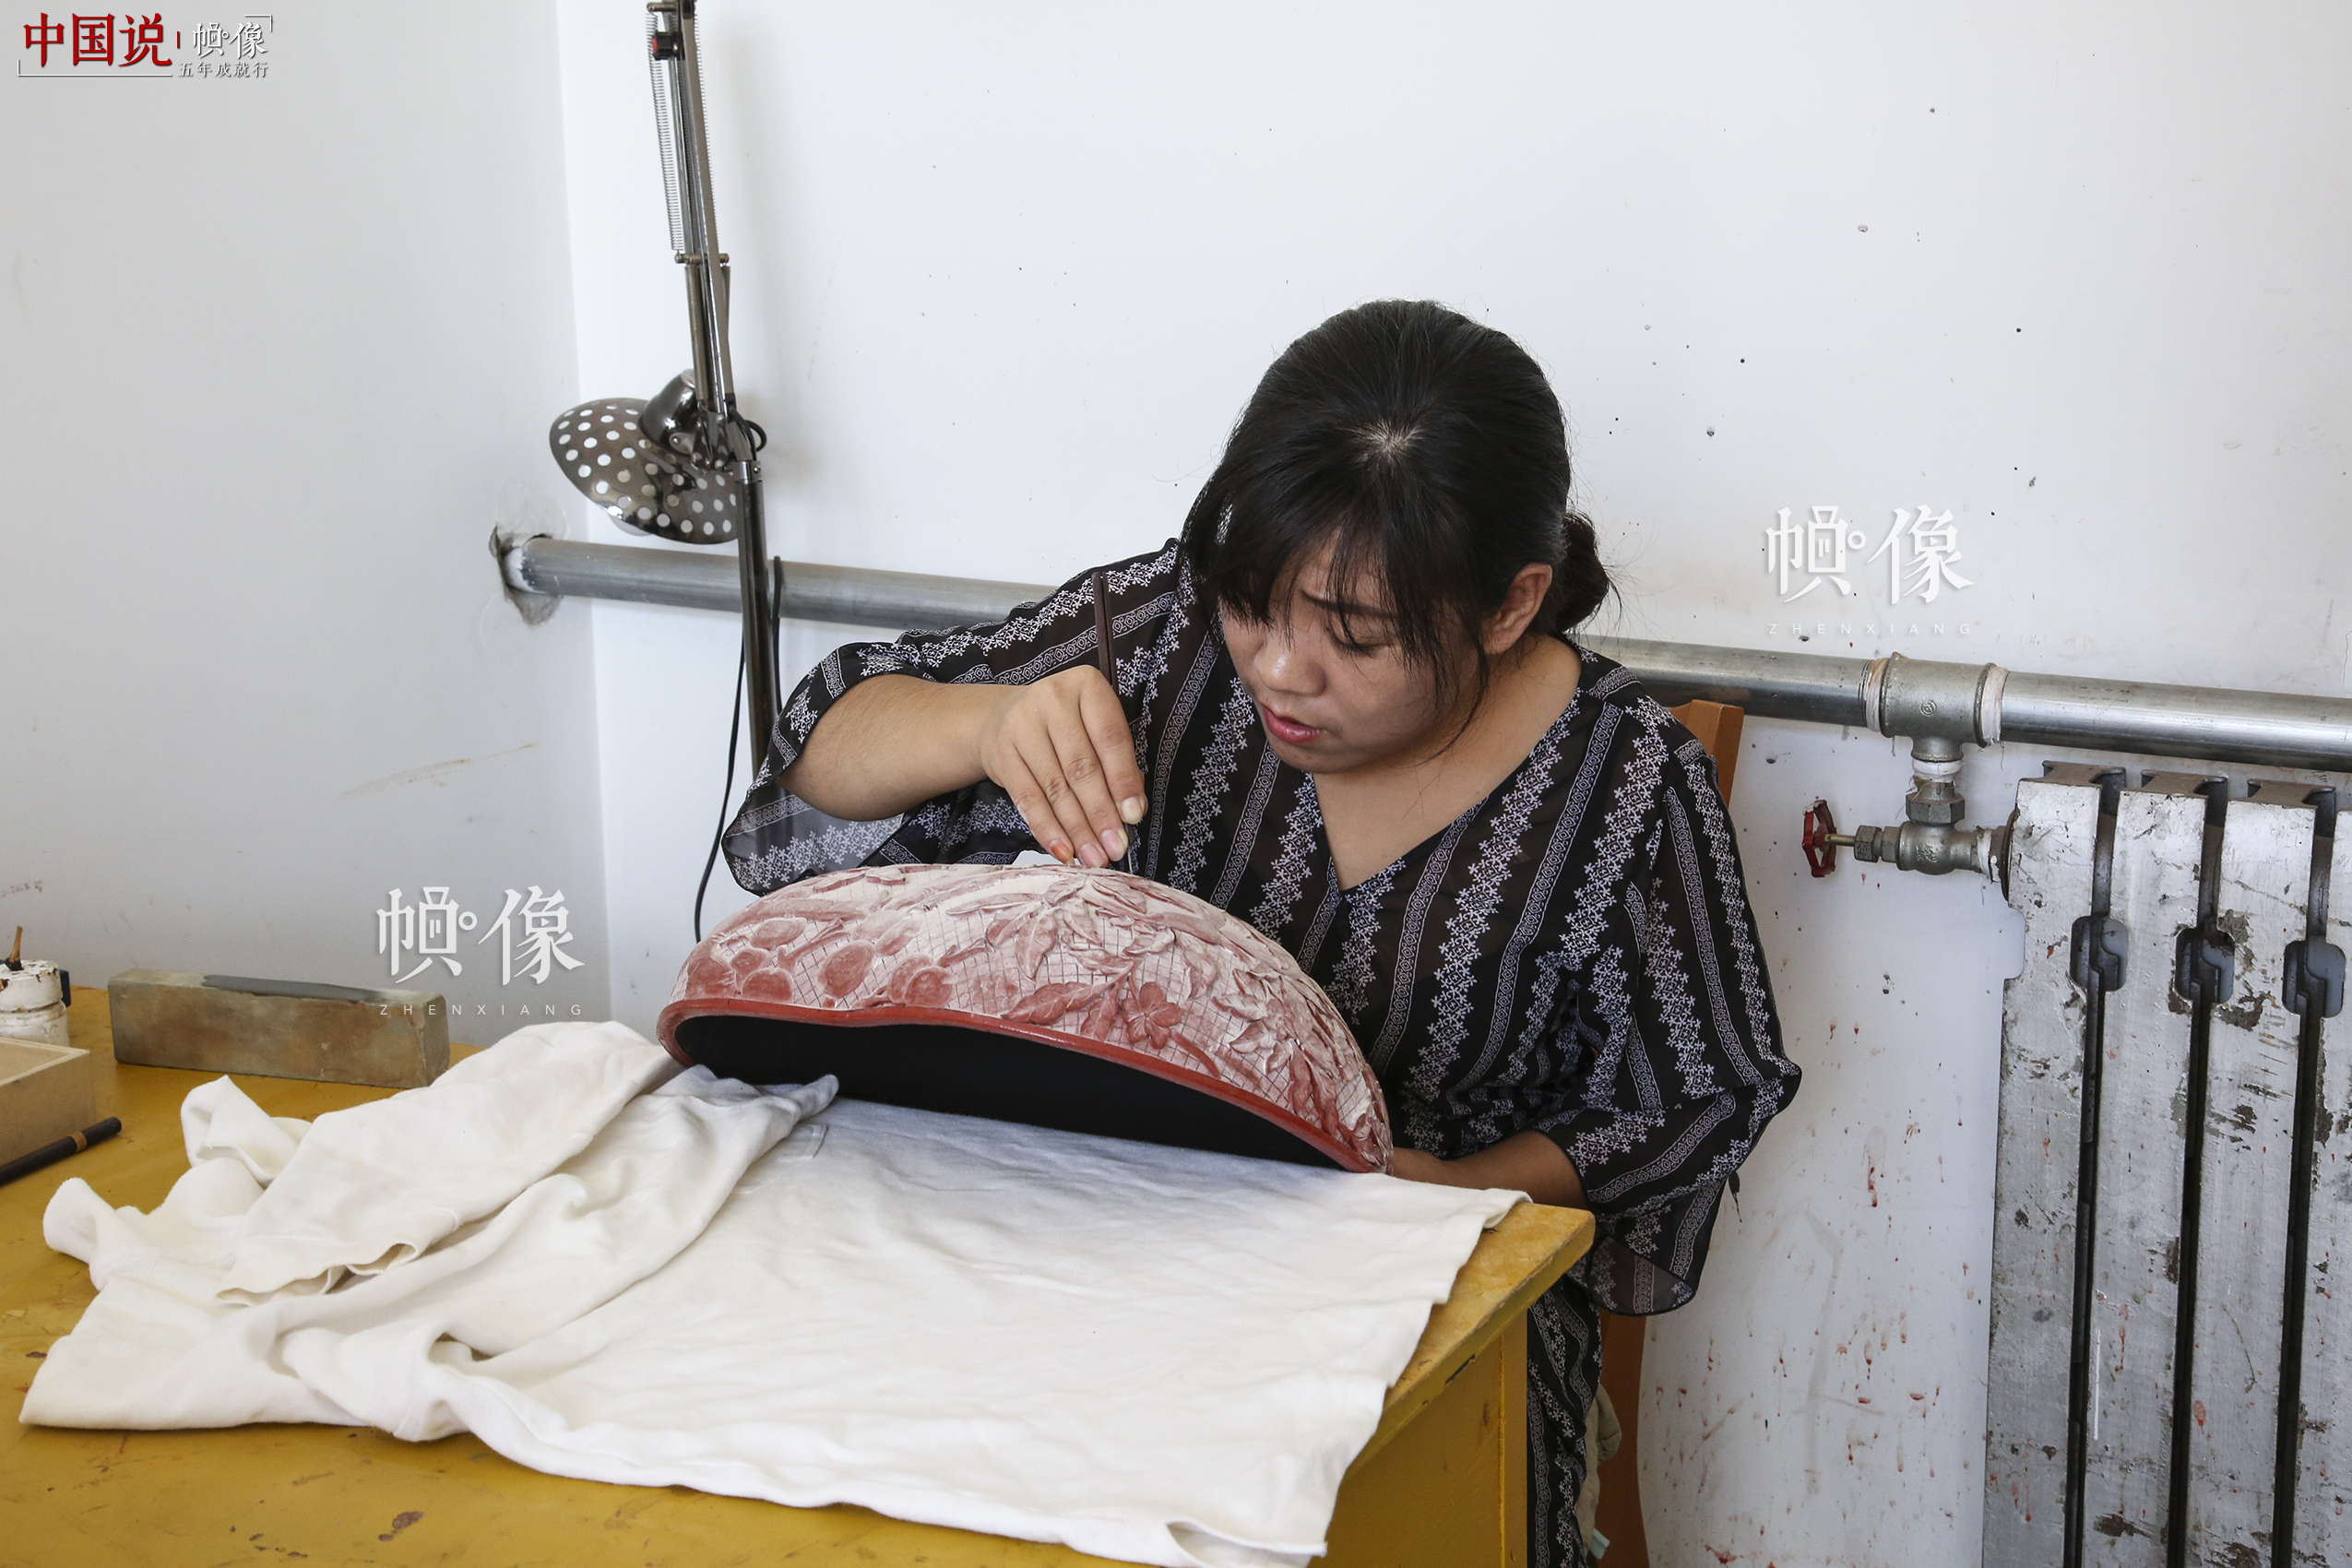 2017年9月20日，“明古斋”雕漆工厂车间，雕漆工作者用木胎制作雕漆。中国网记者 黄富友 摄 